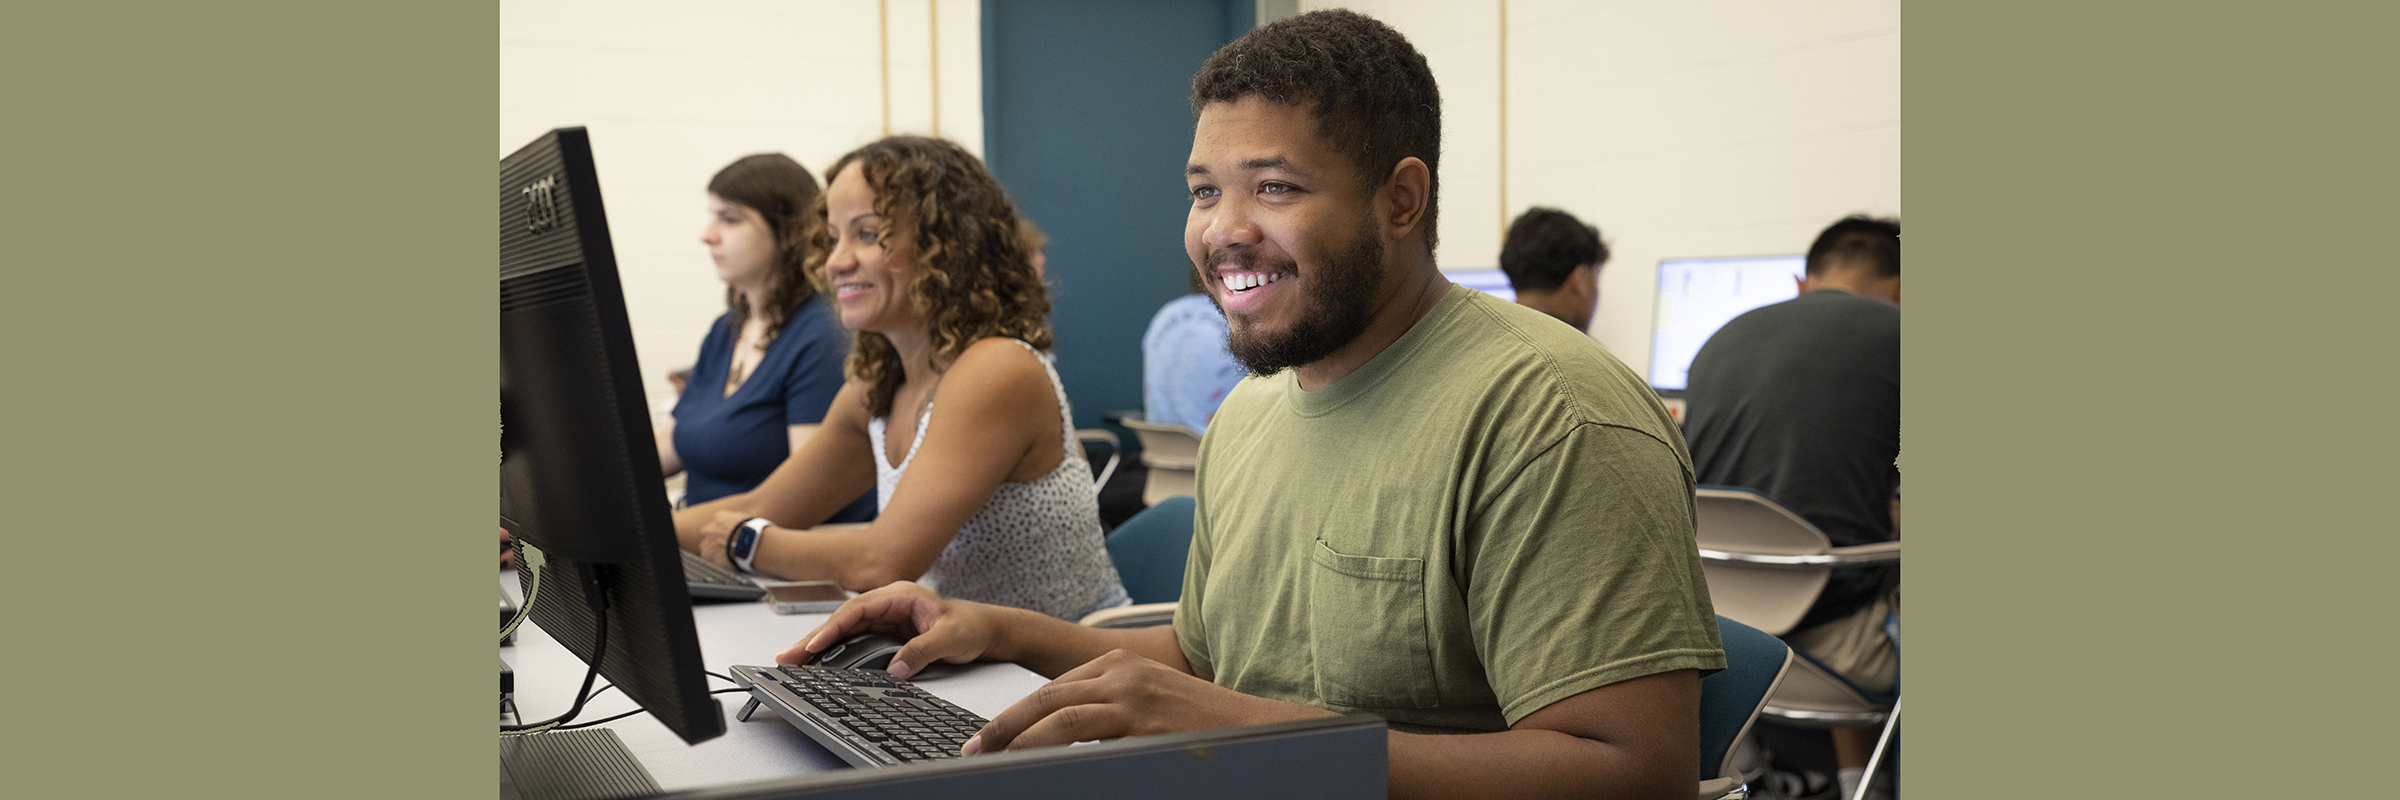 happy young black man at computer